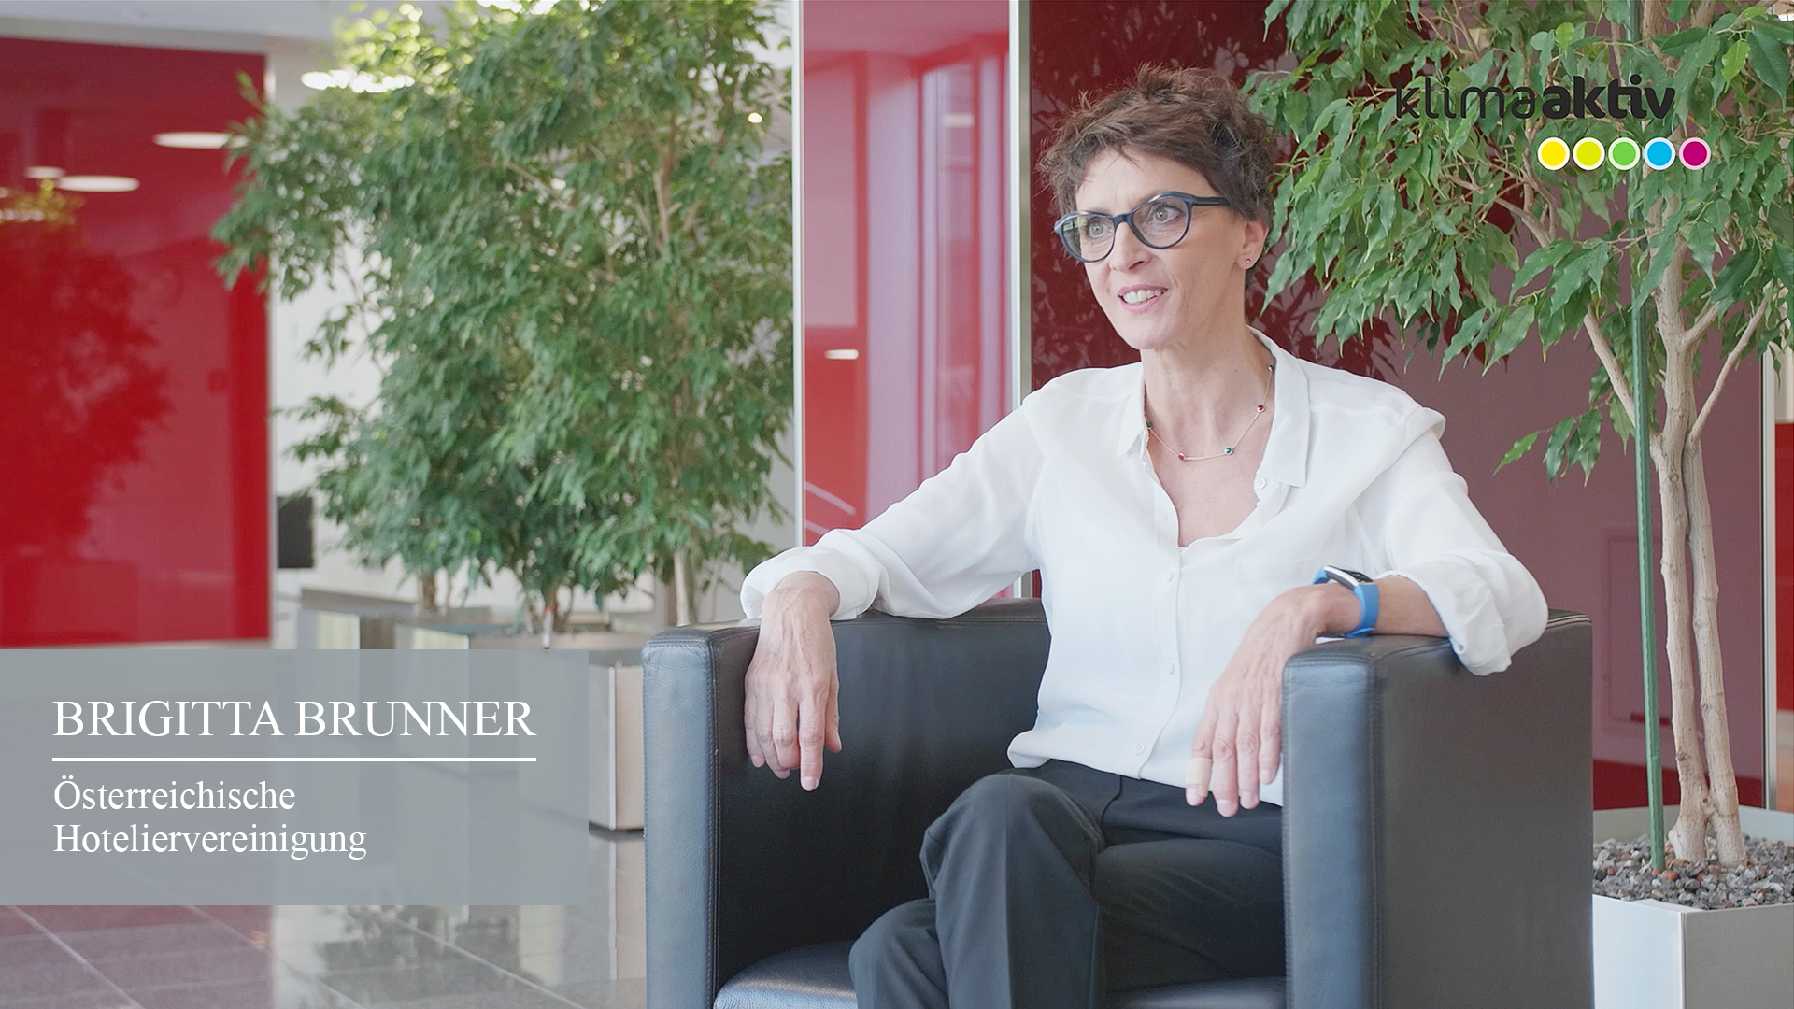 Brigitta Brunner, Österreichische Hoteliervereinigung